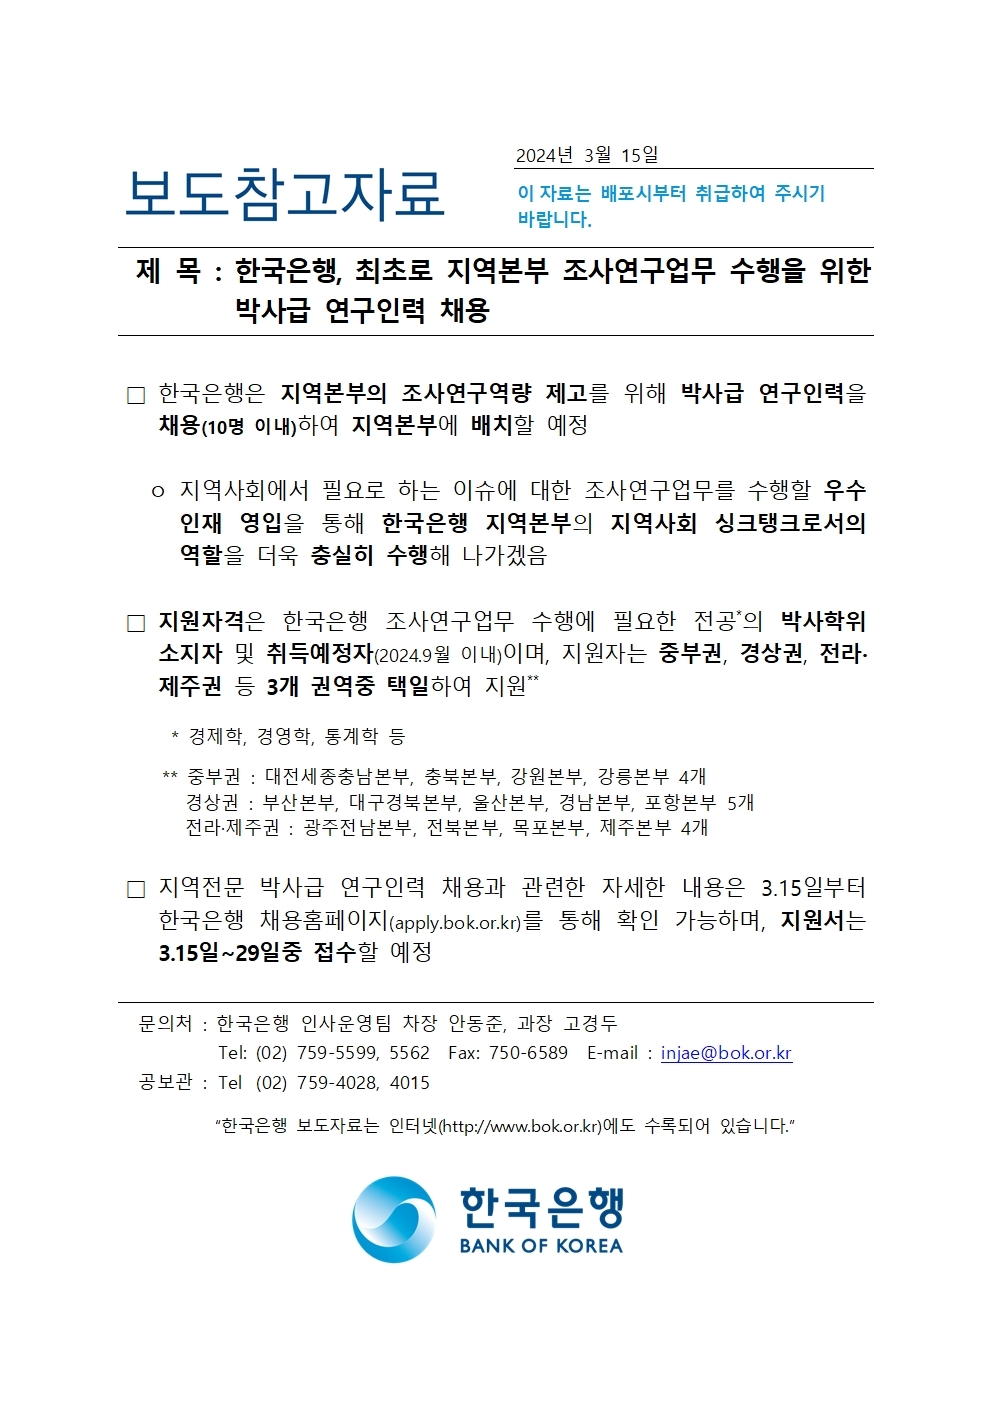 [자료] 한국은행, 최초로 지역본부 조사연구업무 수행 위한 박사급 연구인력 채용